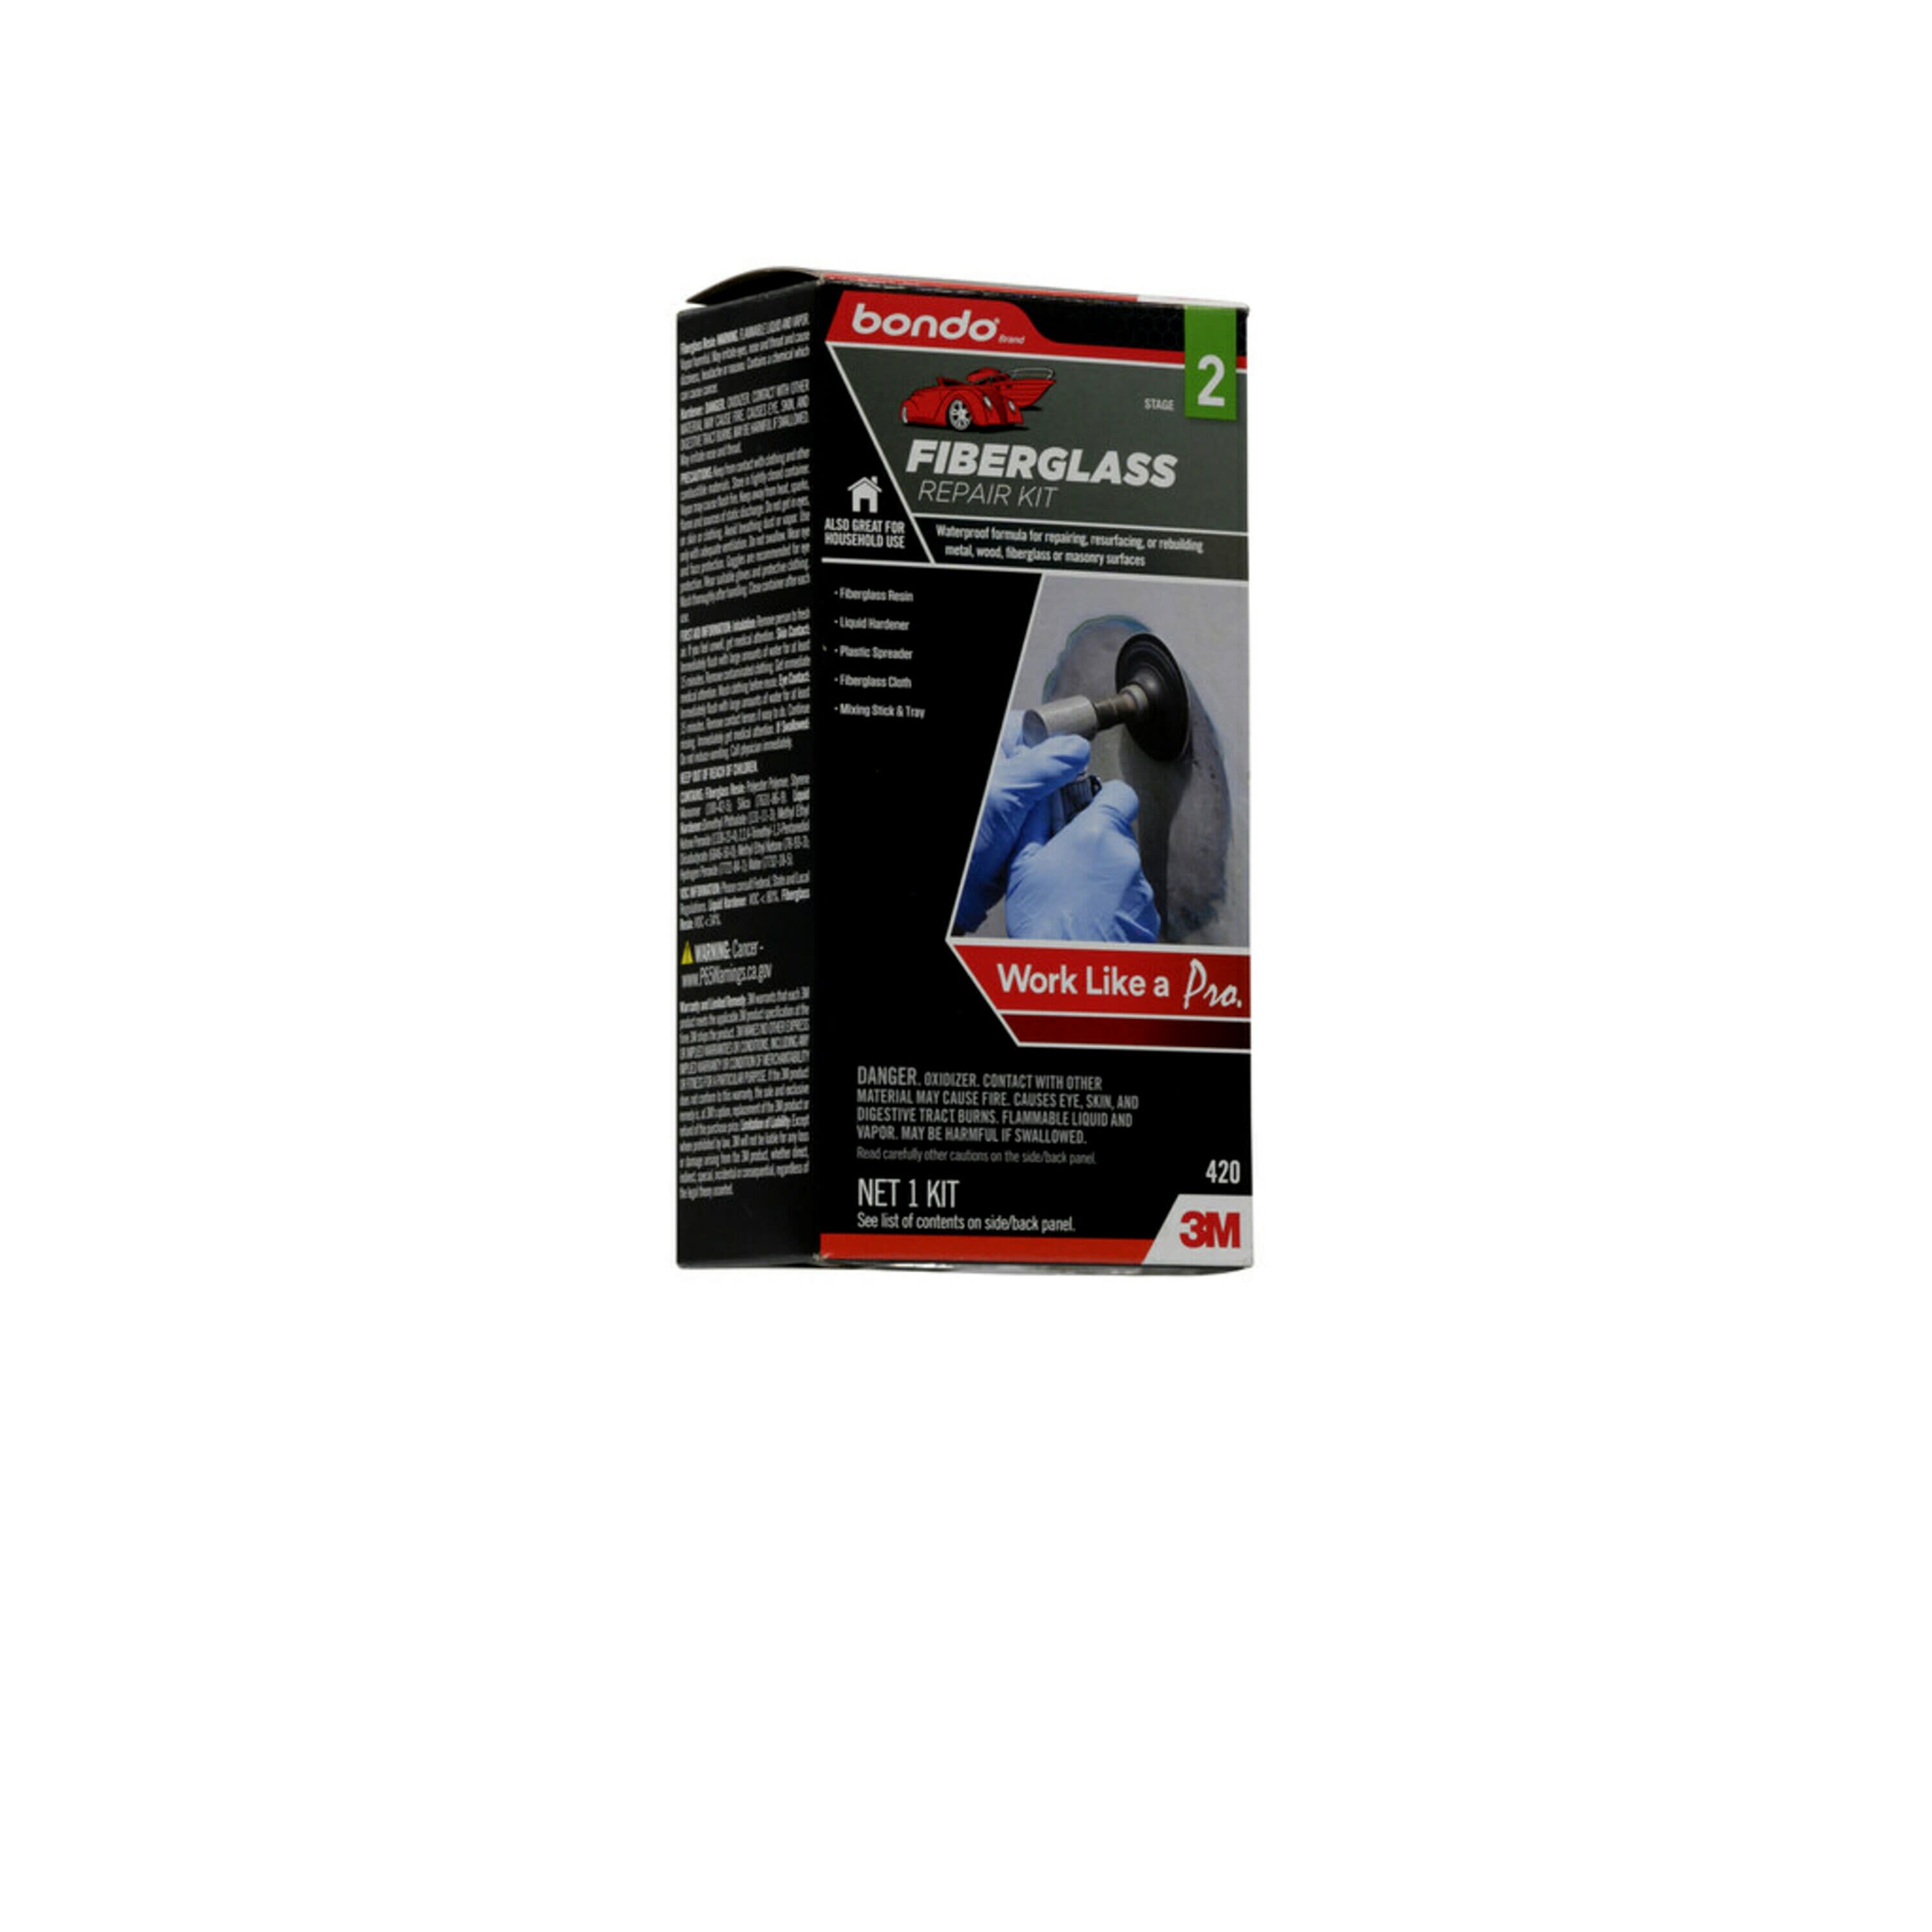 Bondo 422 Fiberglass Resin Repair Kit - 9qt for sale online